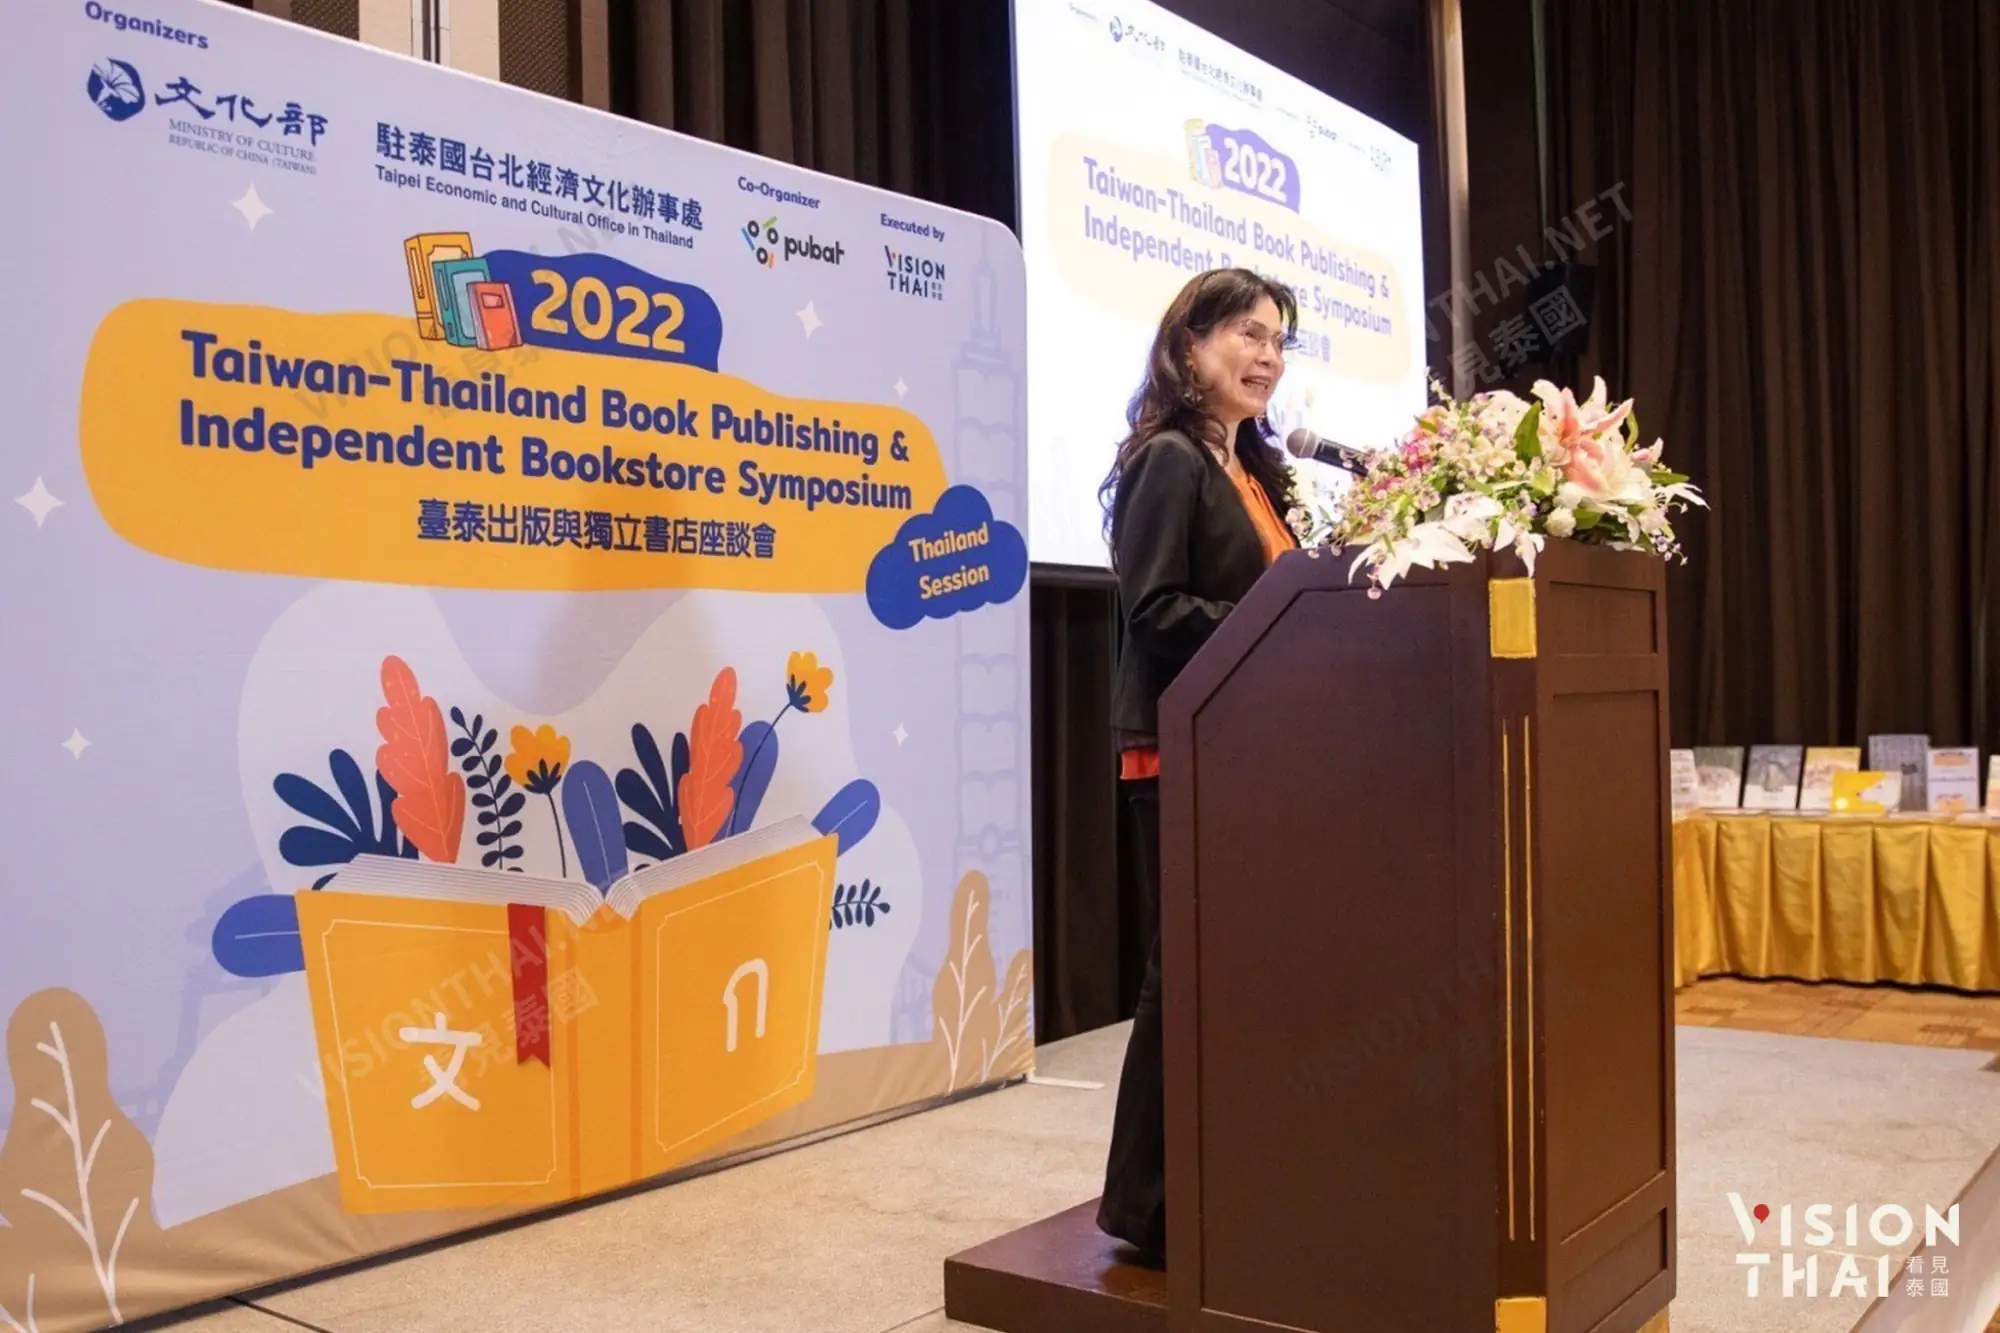 臺泰出版與獨立書店座談會(Taiwan-Thailand Book Publishing & Independent Bookstore Symposium)於今(2022)年11月23日在曼谷圓滿落幕。